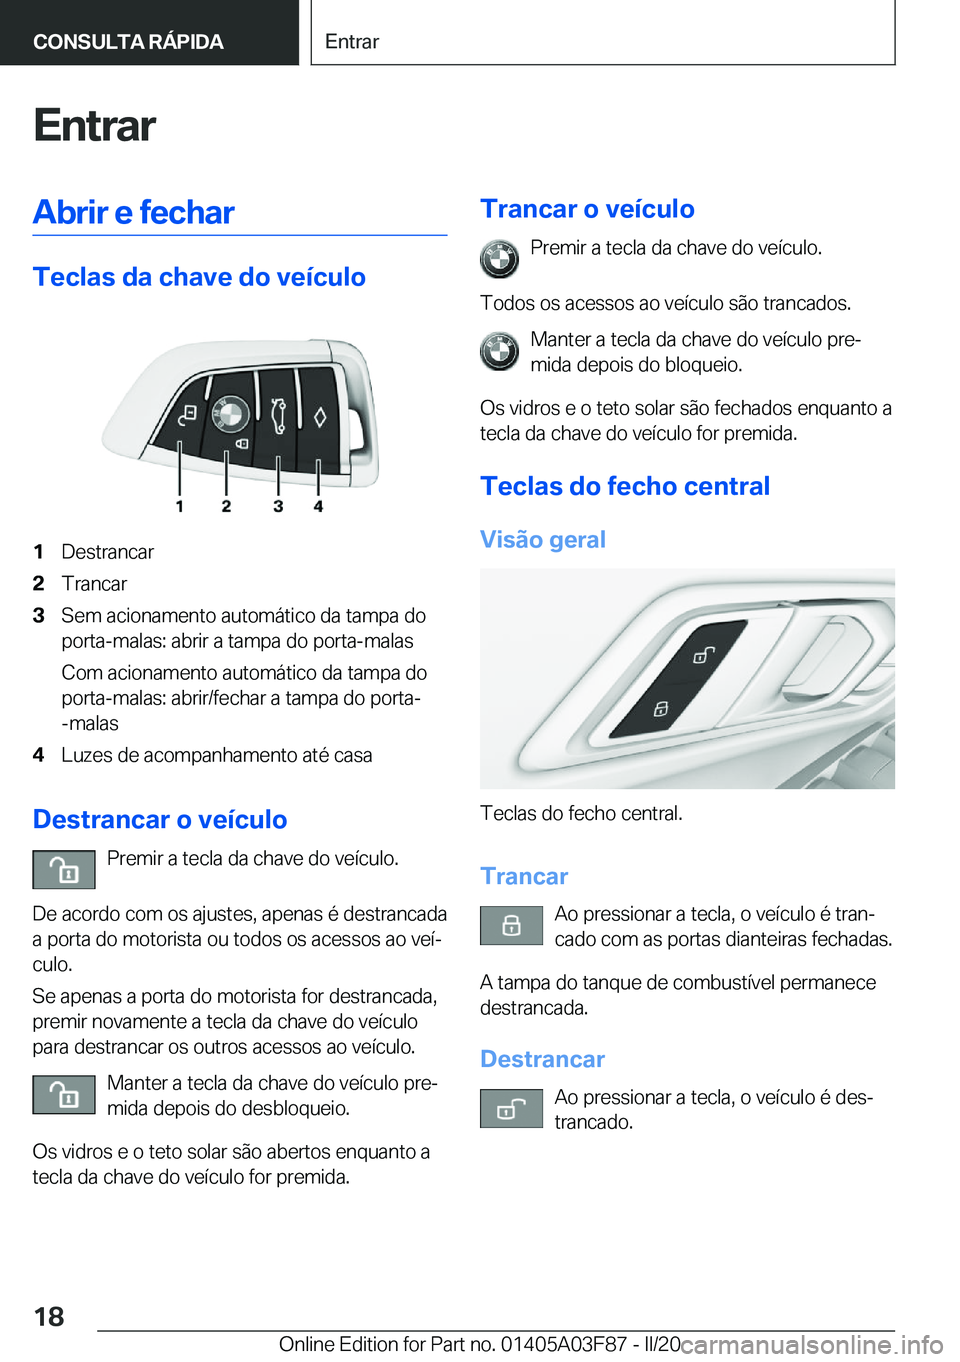 BMW 3 SERIES 2020  Manual do condutor (in Portuguese) �E�n�t�r�a�r�A�b�r�i�r��e��f�e�c�h�a�r
�T�e�c�l�a�s��d�a��c�h�a�v�e��d�o��v�e�